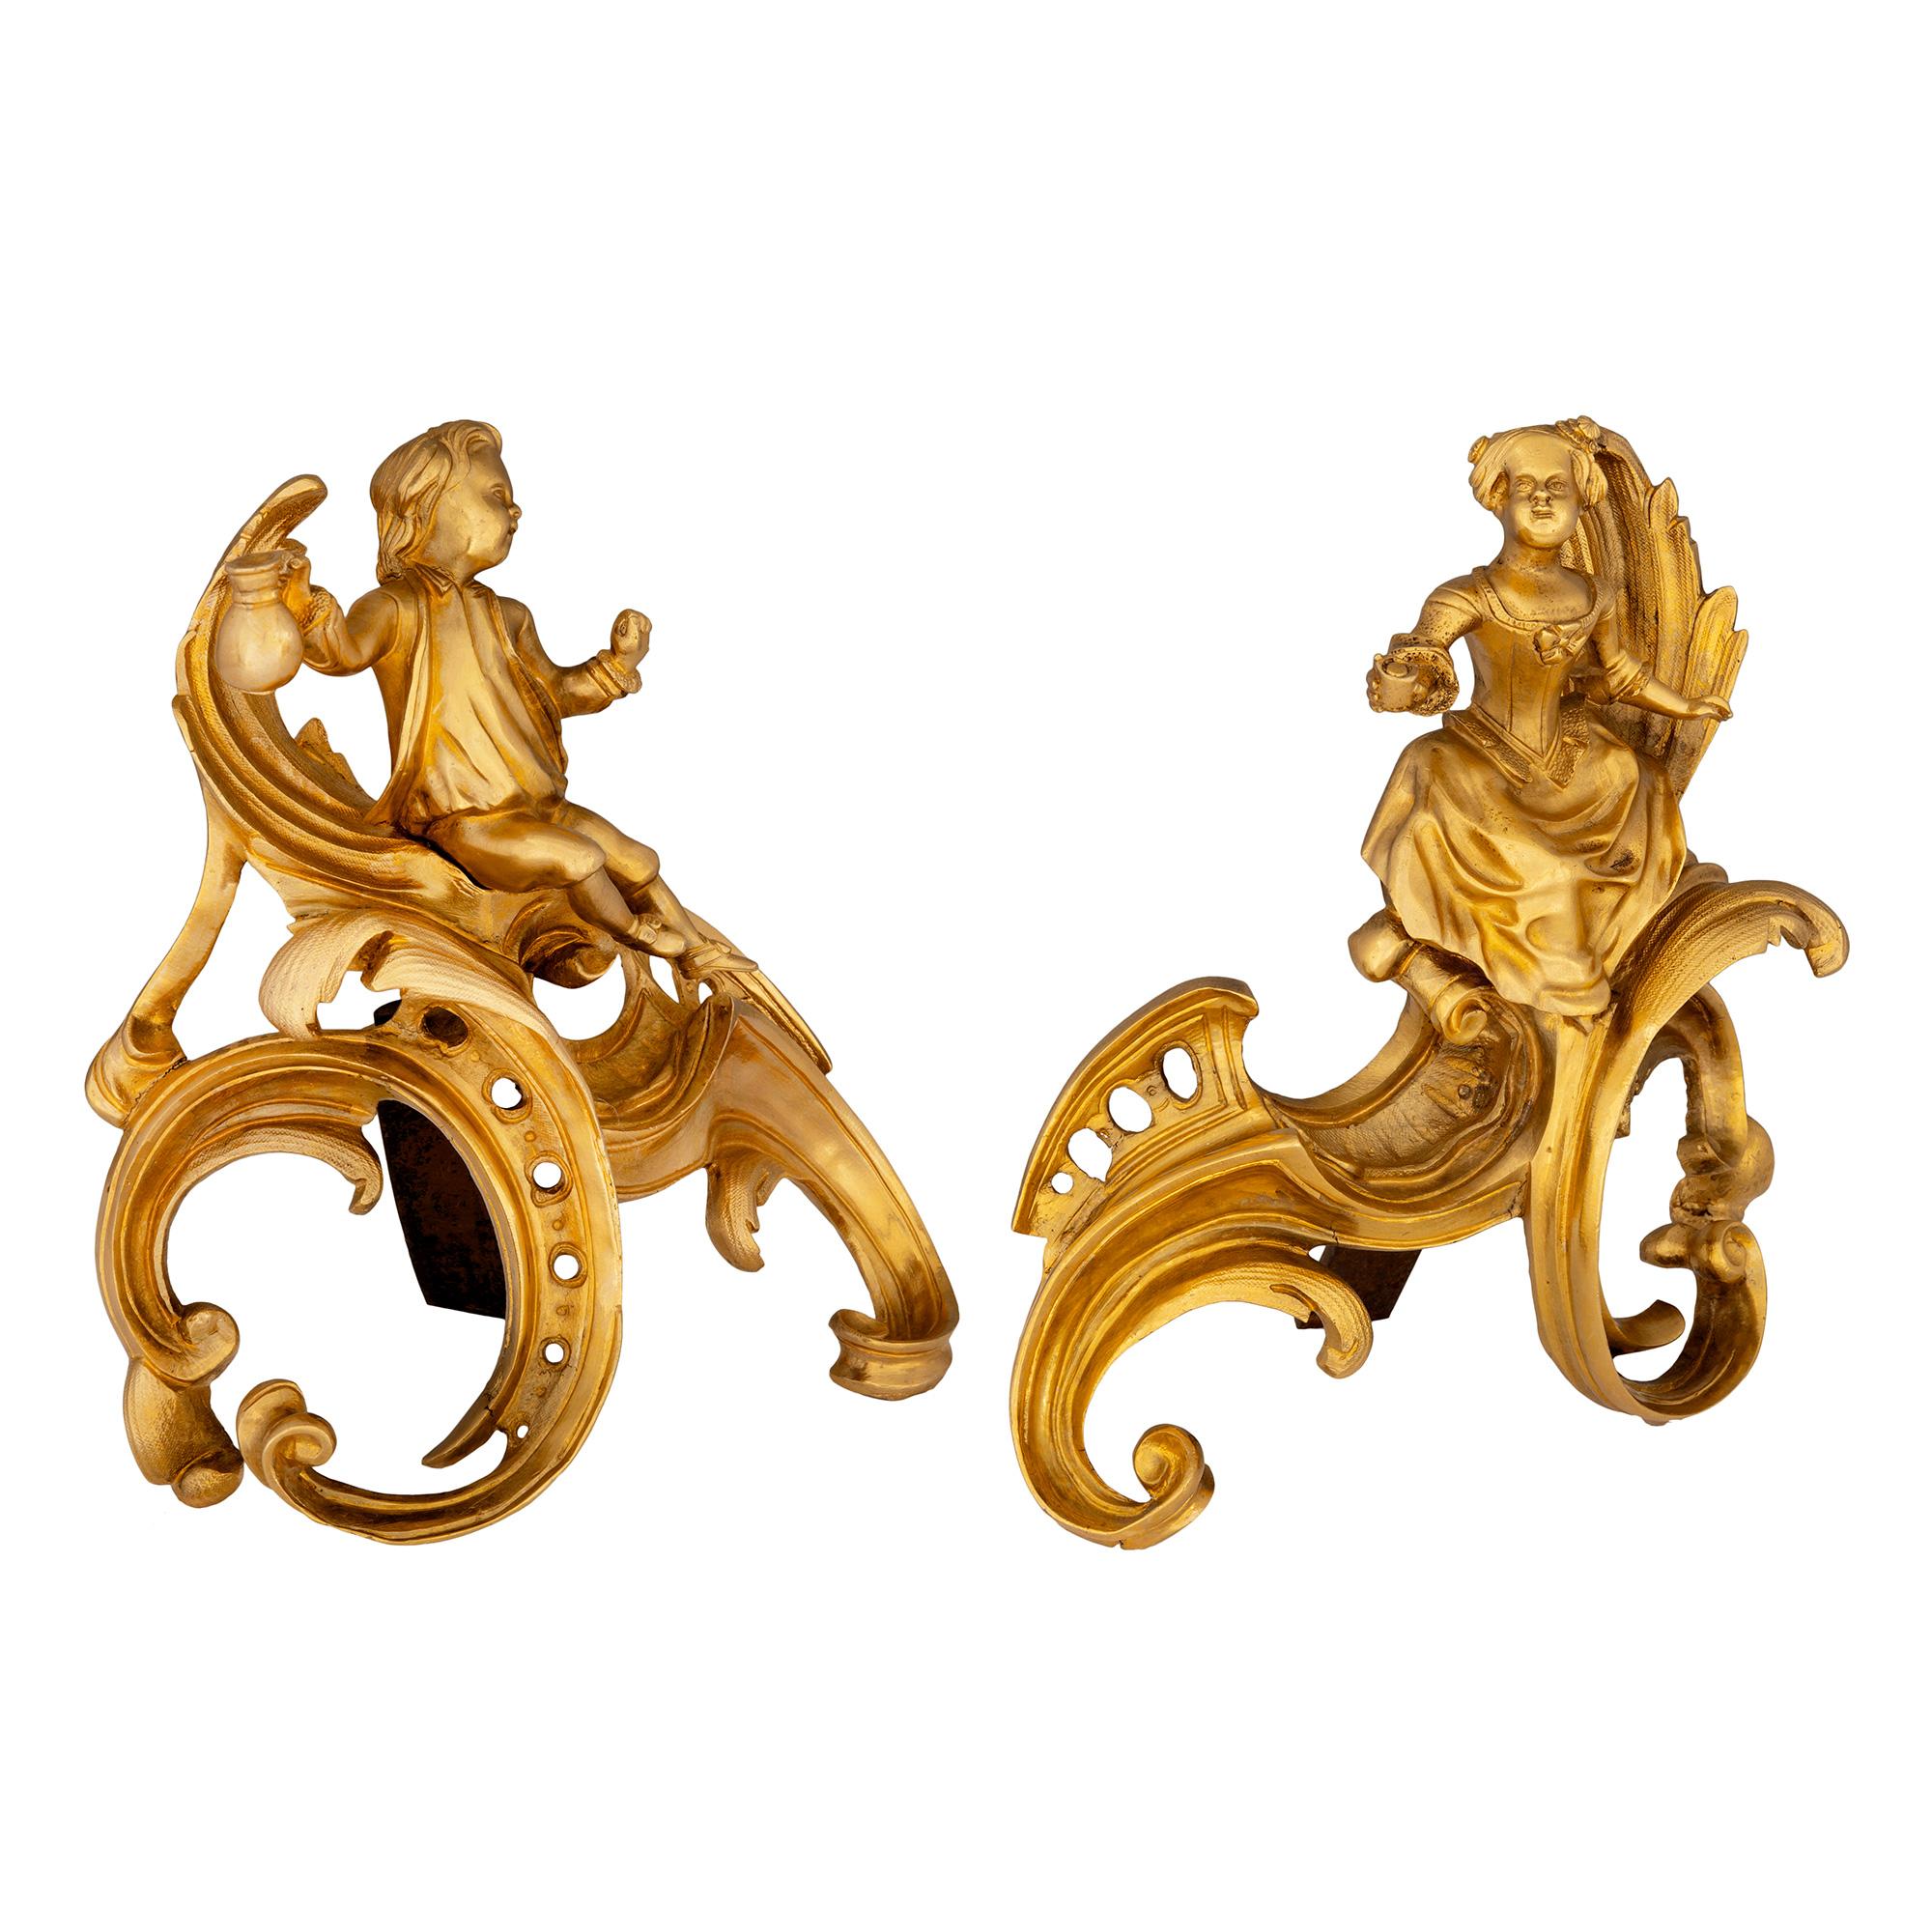 Ein schönes und außergewöhnliches Paar französischer Ormolu-Andirons aus dem 19. Jahrhundert. Jedes feuervergoldete Bügeleisen wird von höchst dekorativen, phantasievoll geschwungenen Stützen mit durchbrochenen und gesprenkelten Mustern getragen.